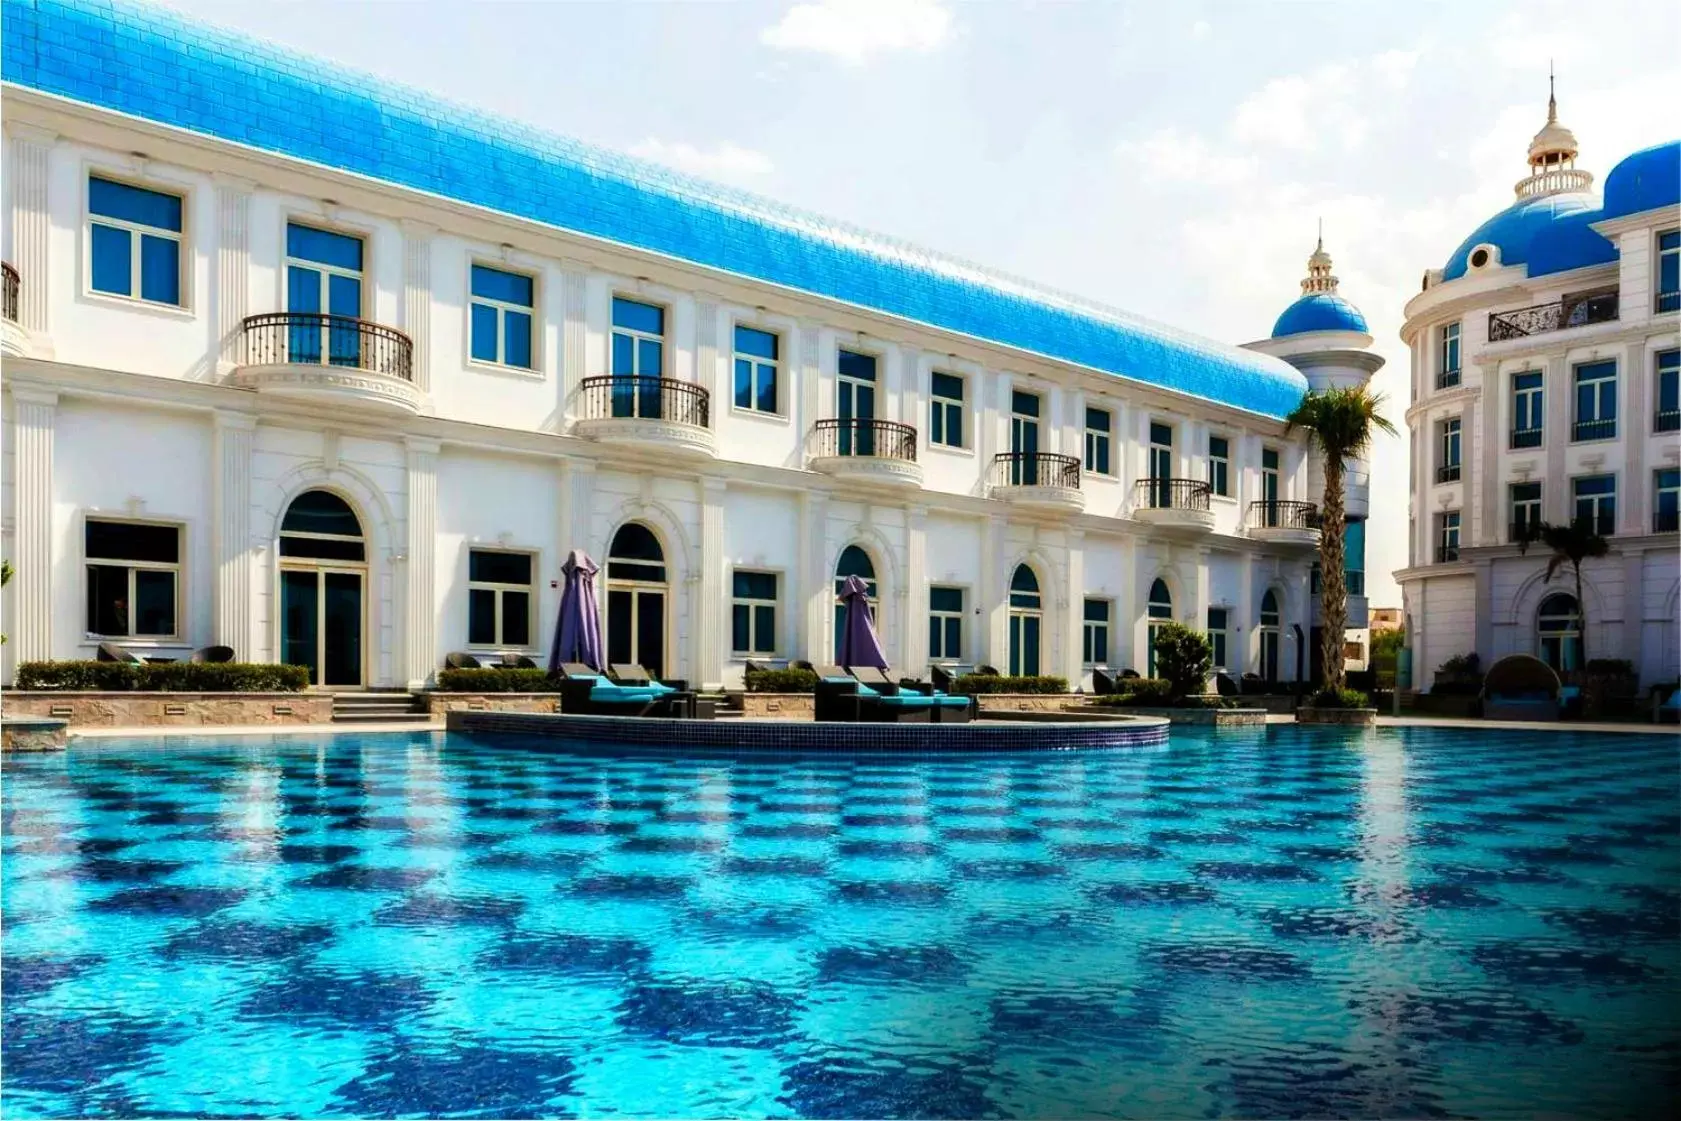 Pool view, Swimming Pool in Royal Maxim Palace Kempinski Cairo